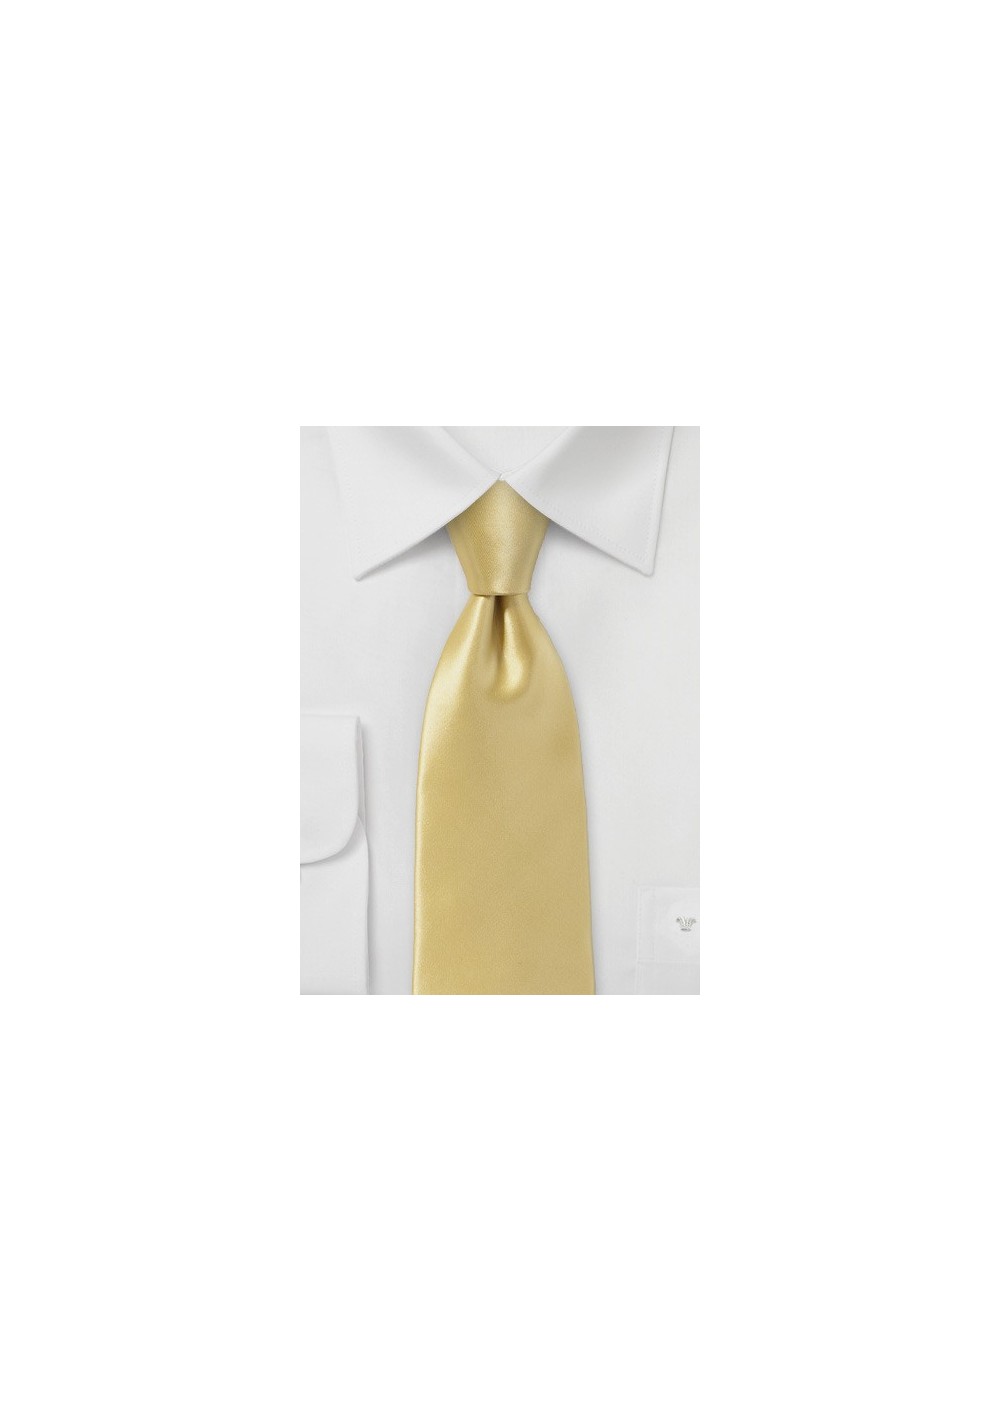 Vintage Gold Necktie